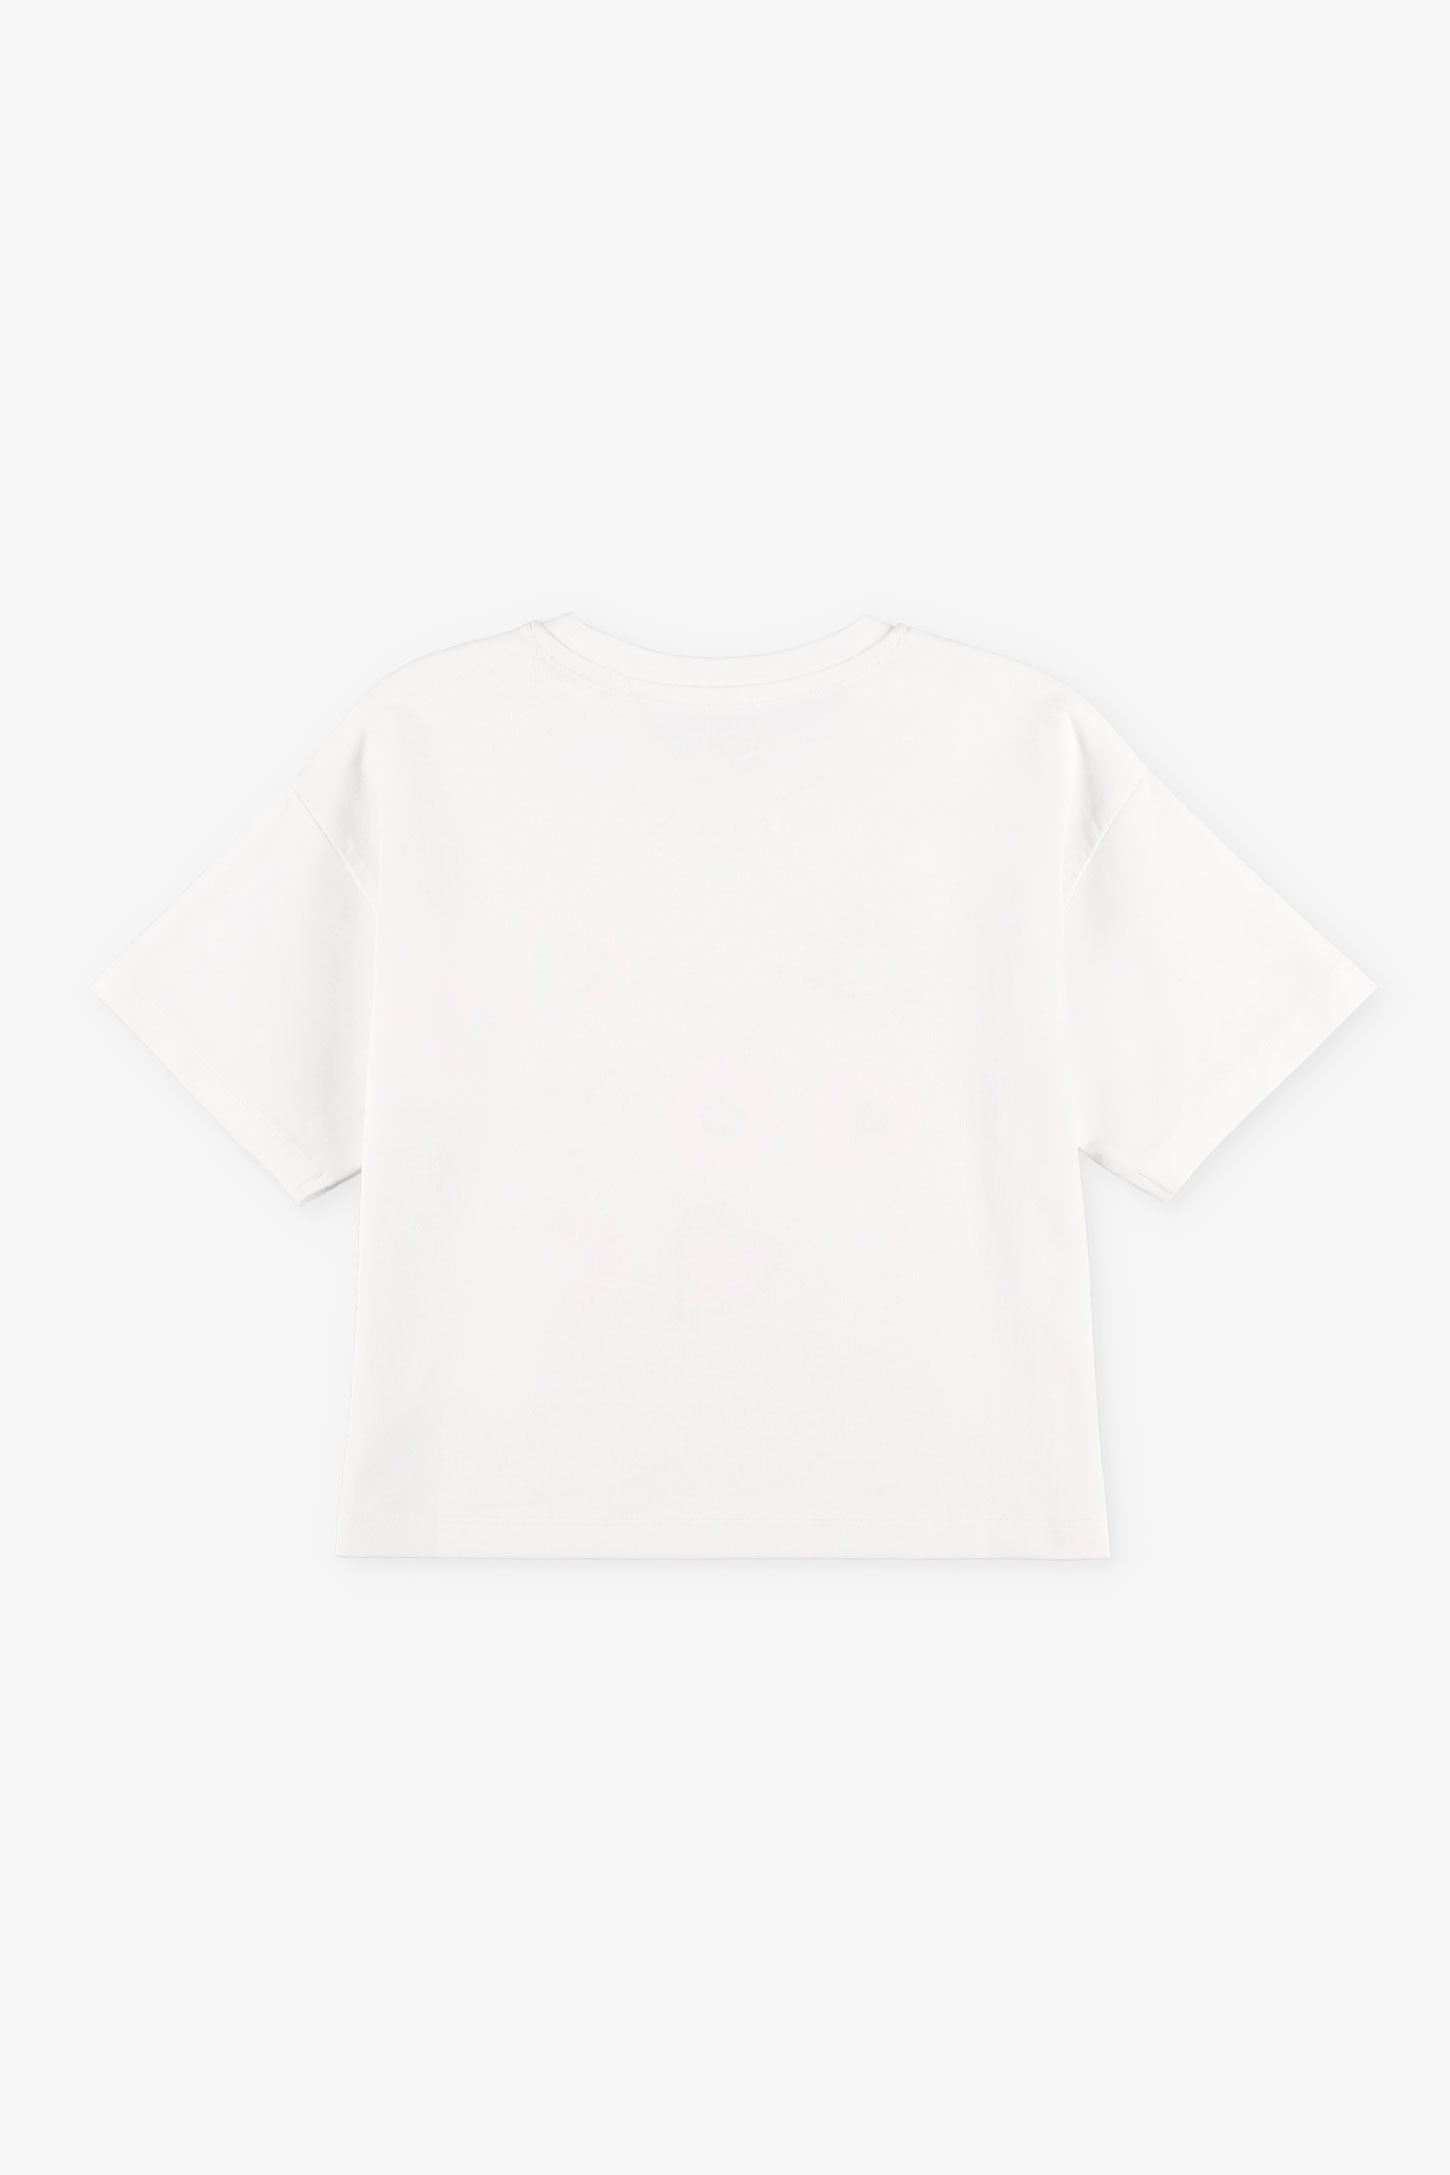 Duos futés, T-shirt coupe écourtée, 2/20$ - Enfant fille && BLANC